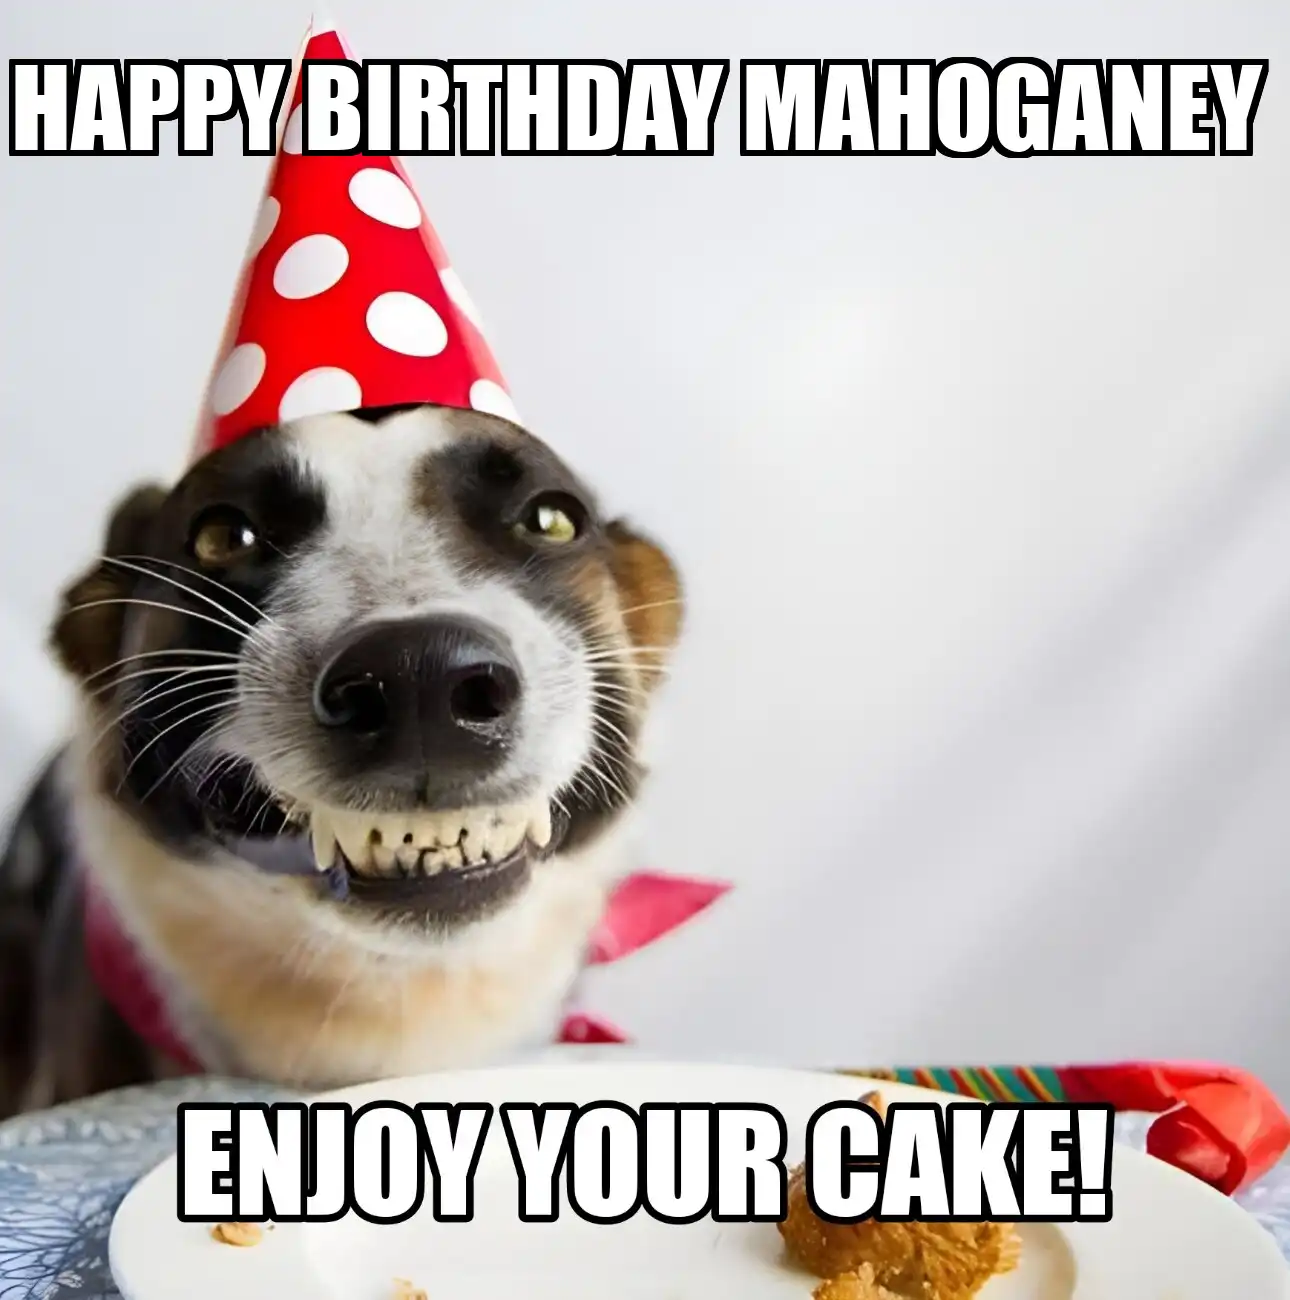 Happy Birthday Mahoganey Enjoy Your Cake Dog Meme